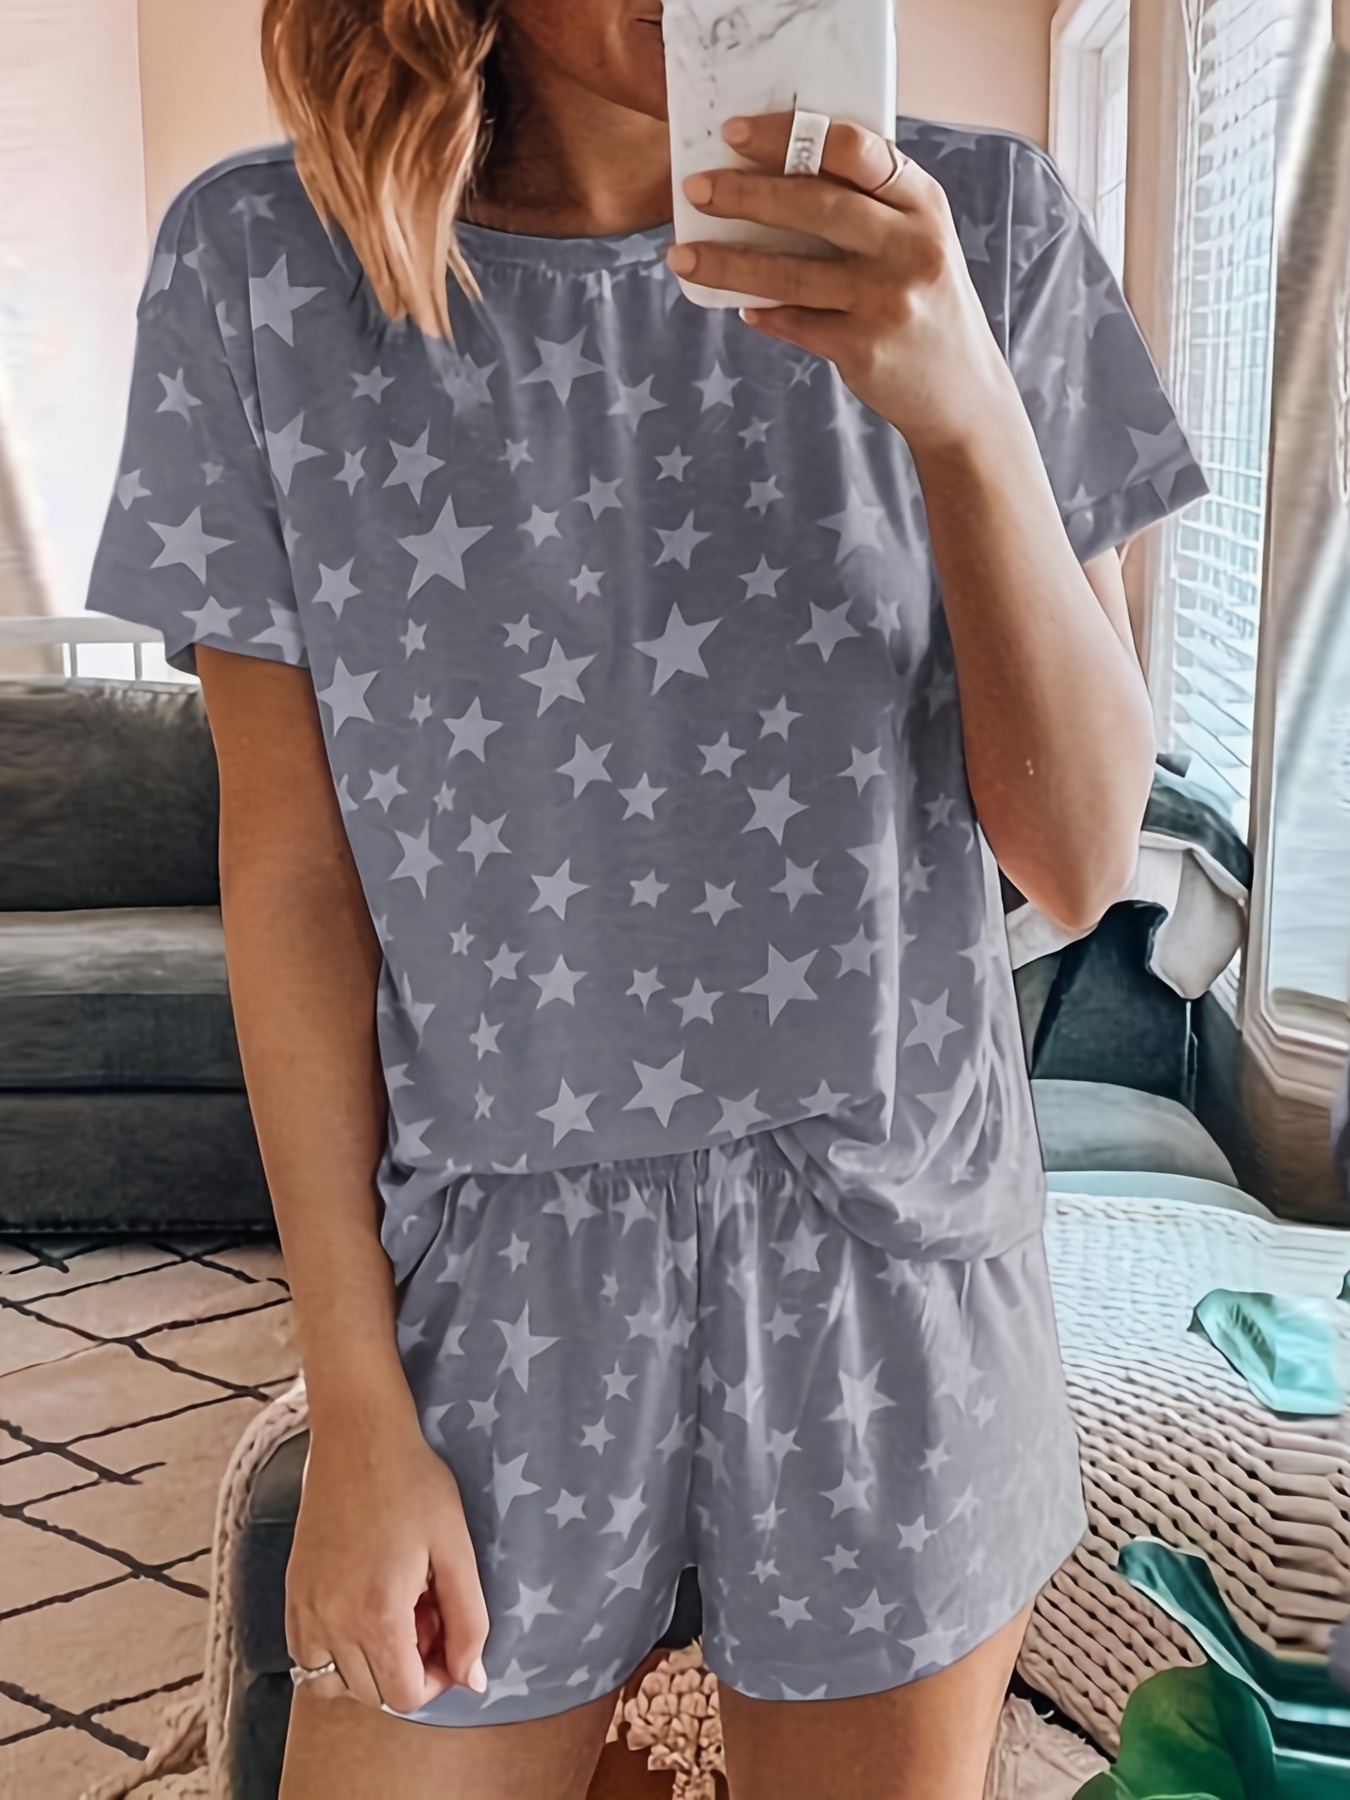 Summer Cute Crown Print Pajamas, Short Sleeve Tee Top And Pants Pj Set,  Women's Sleepwear & Loungewear